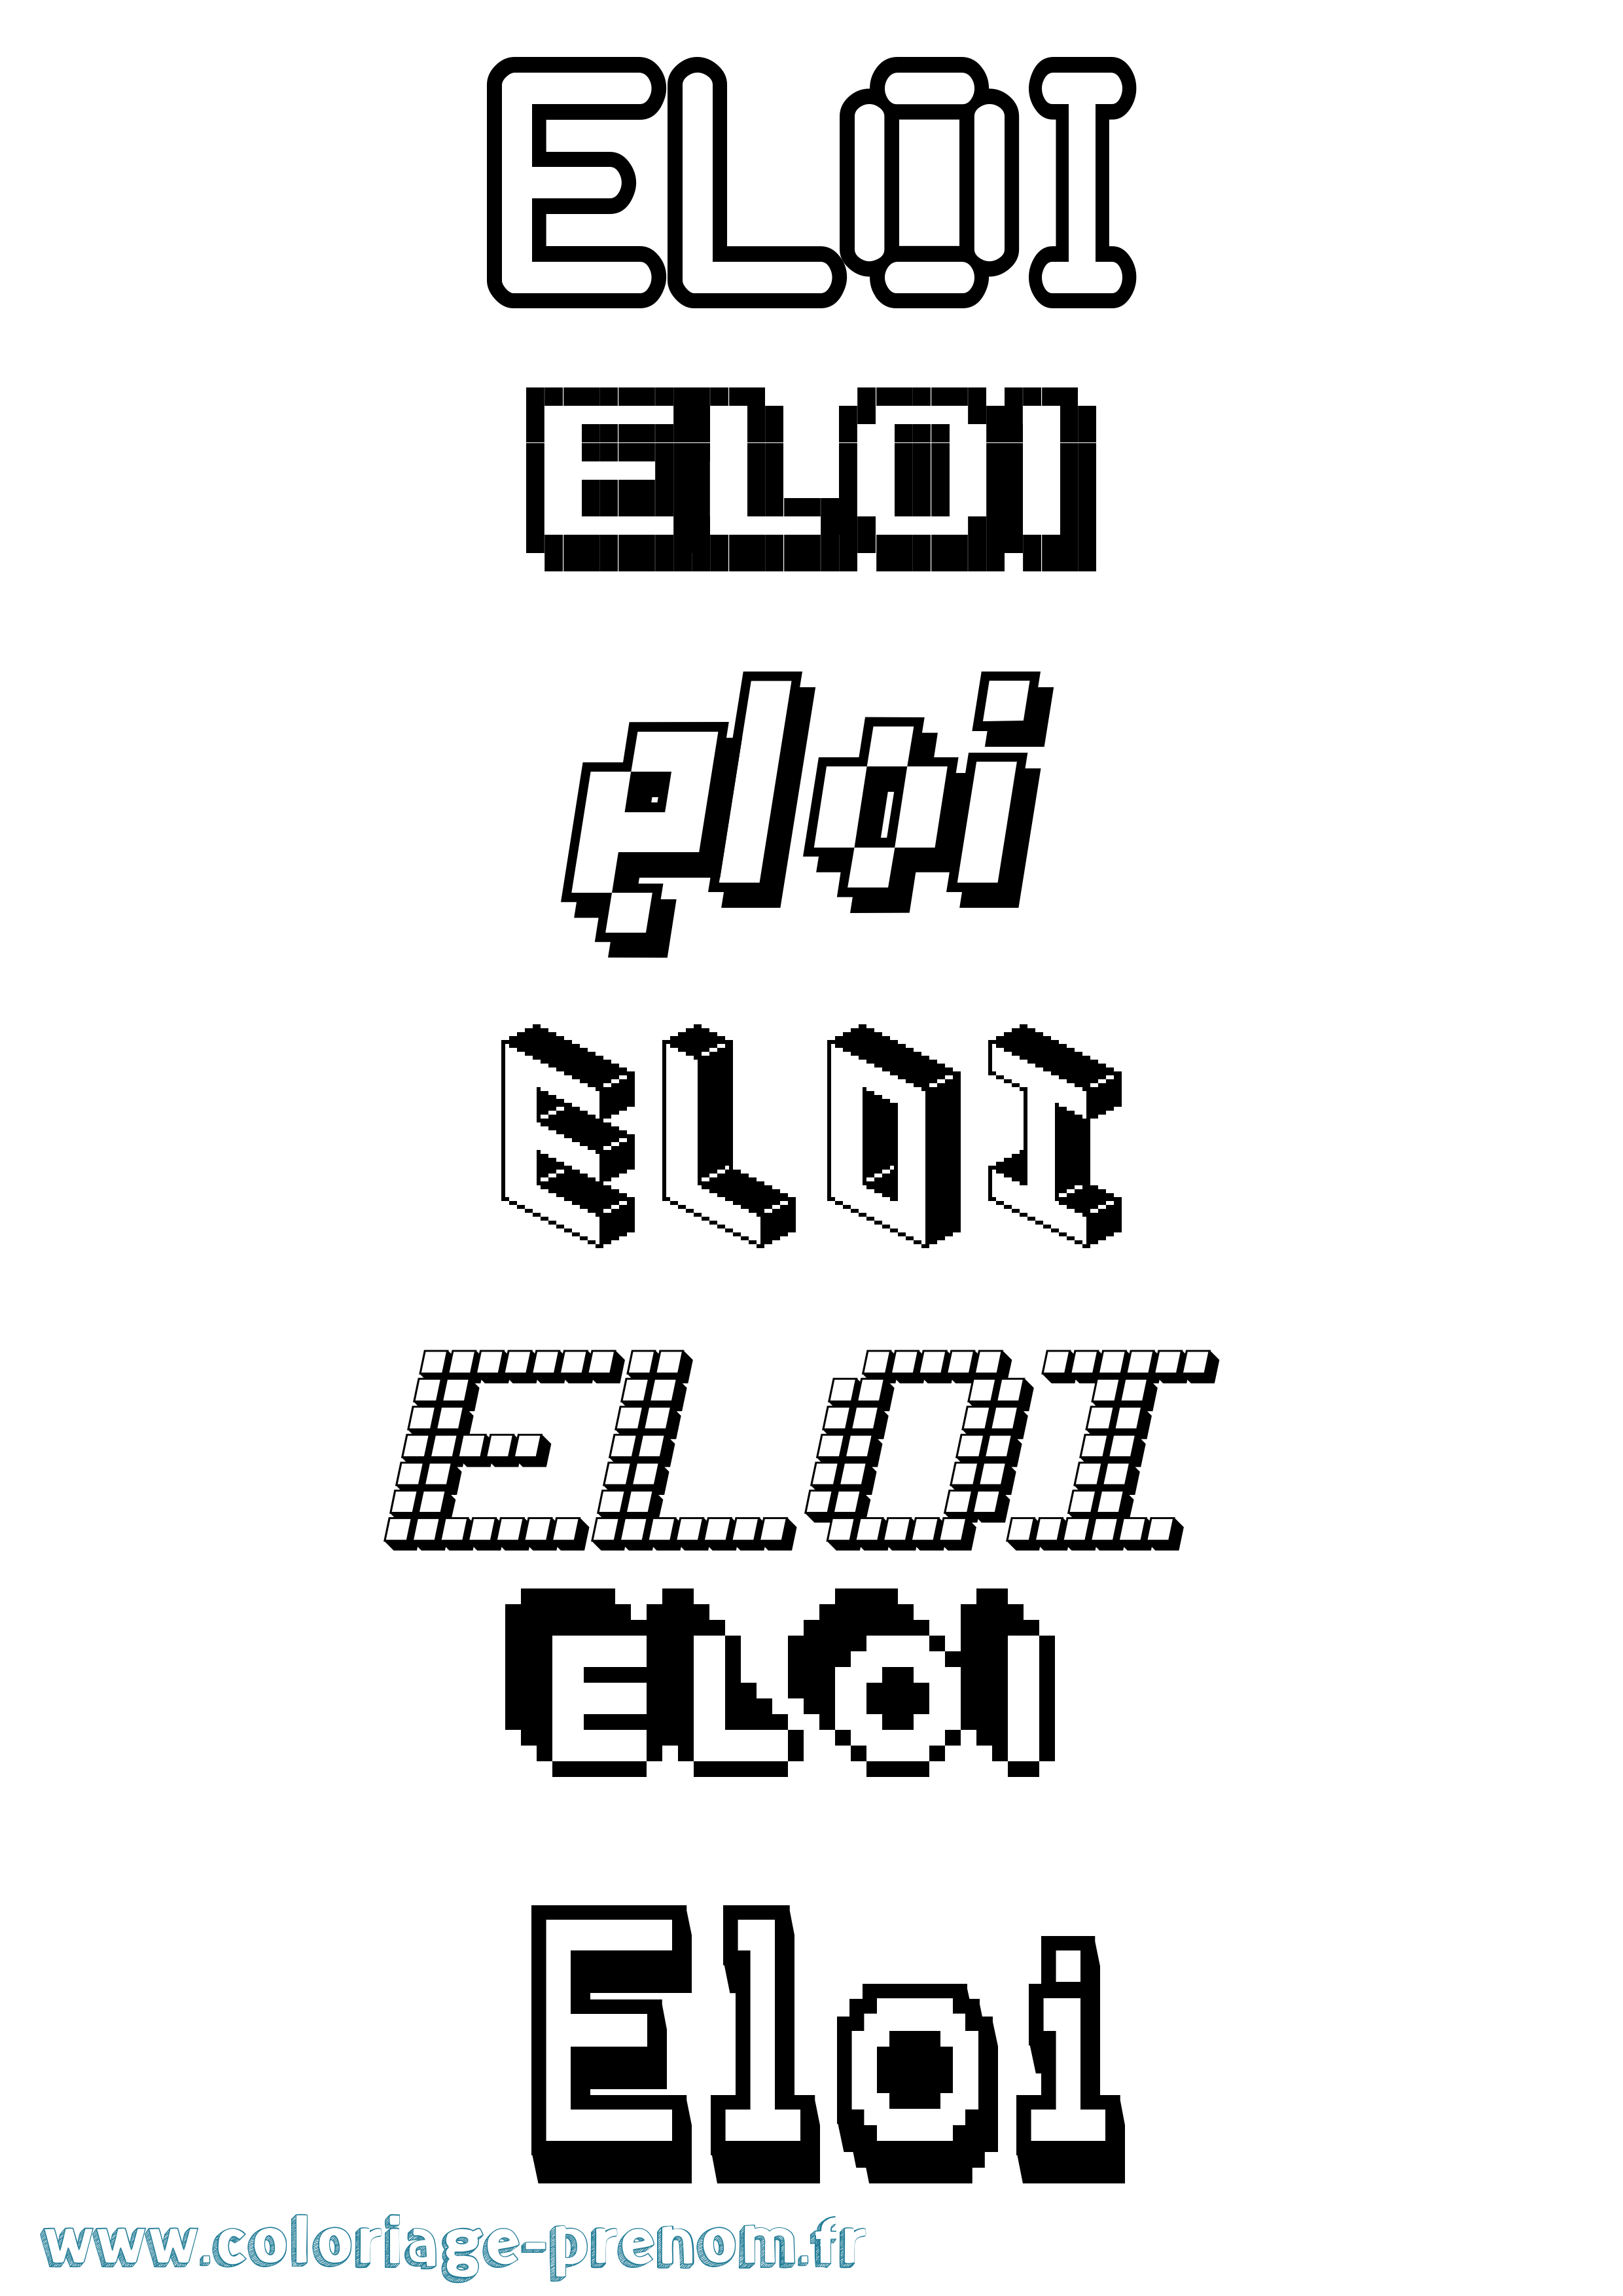 Coloriage prénom Eloi